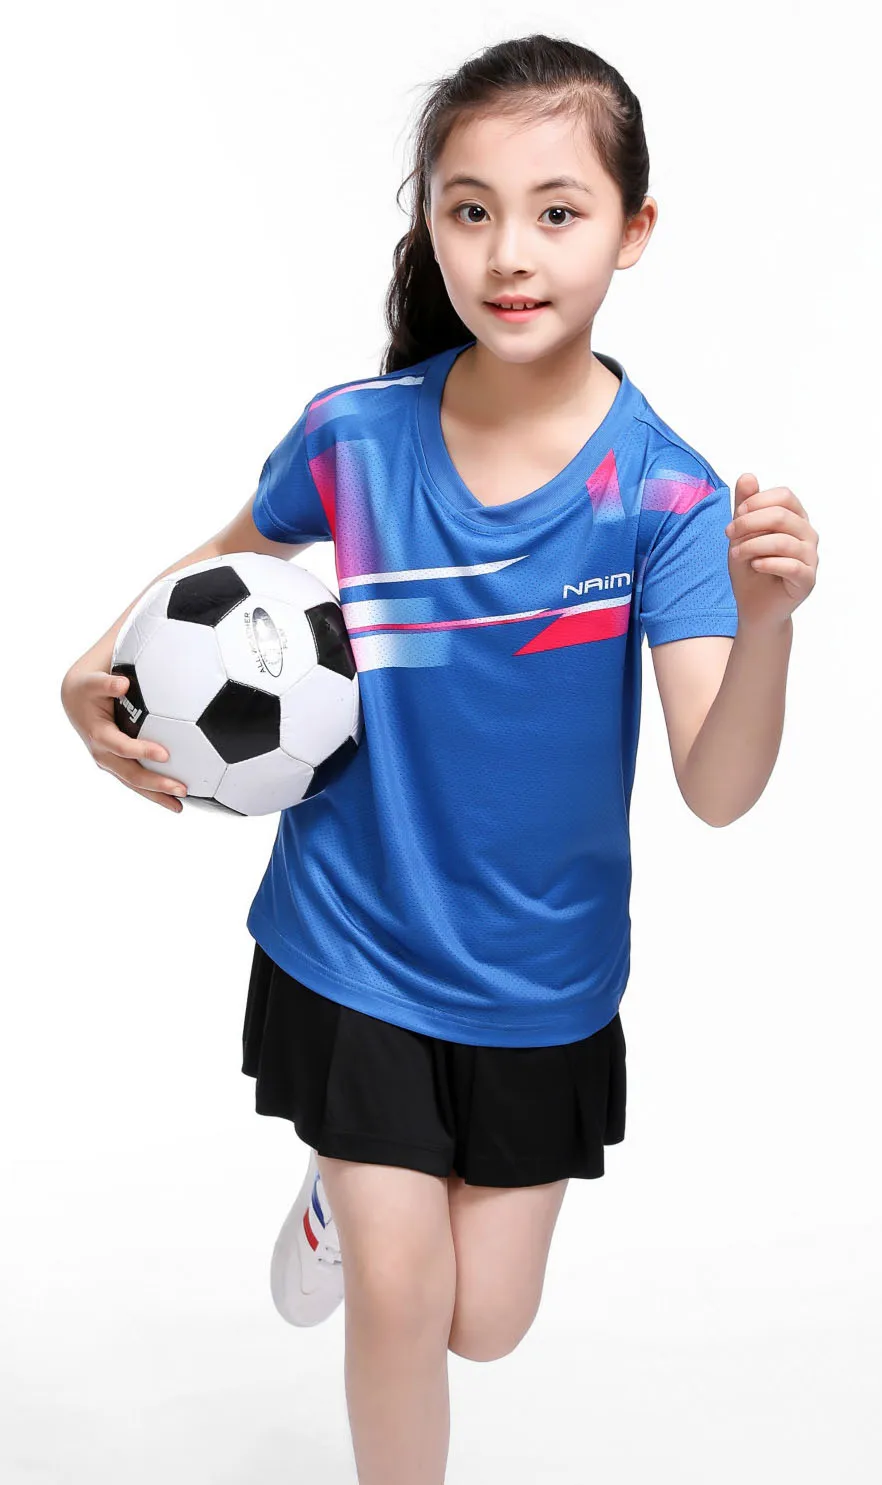 Tenis masculino для девочек, детская рубашка для настольного тенниса, с короткими рукавами для игры в настольный теннис, футболка, Детская рубашка для бадминтона, Полиэстеровые футболки pingpong